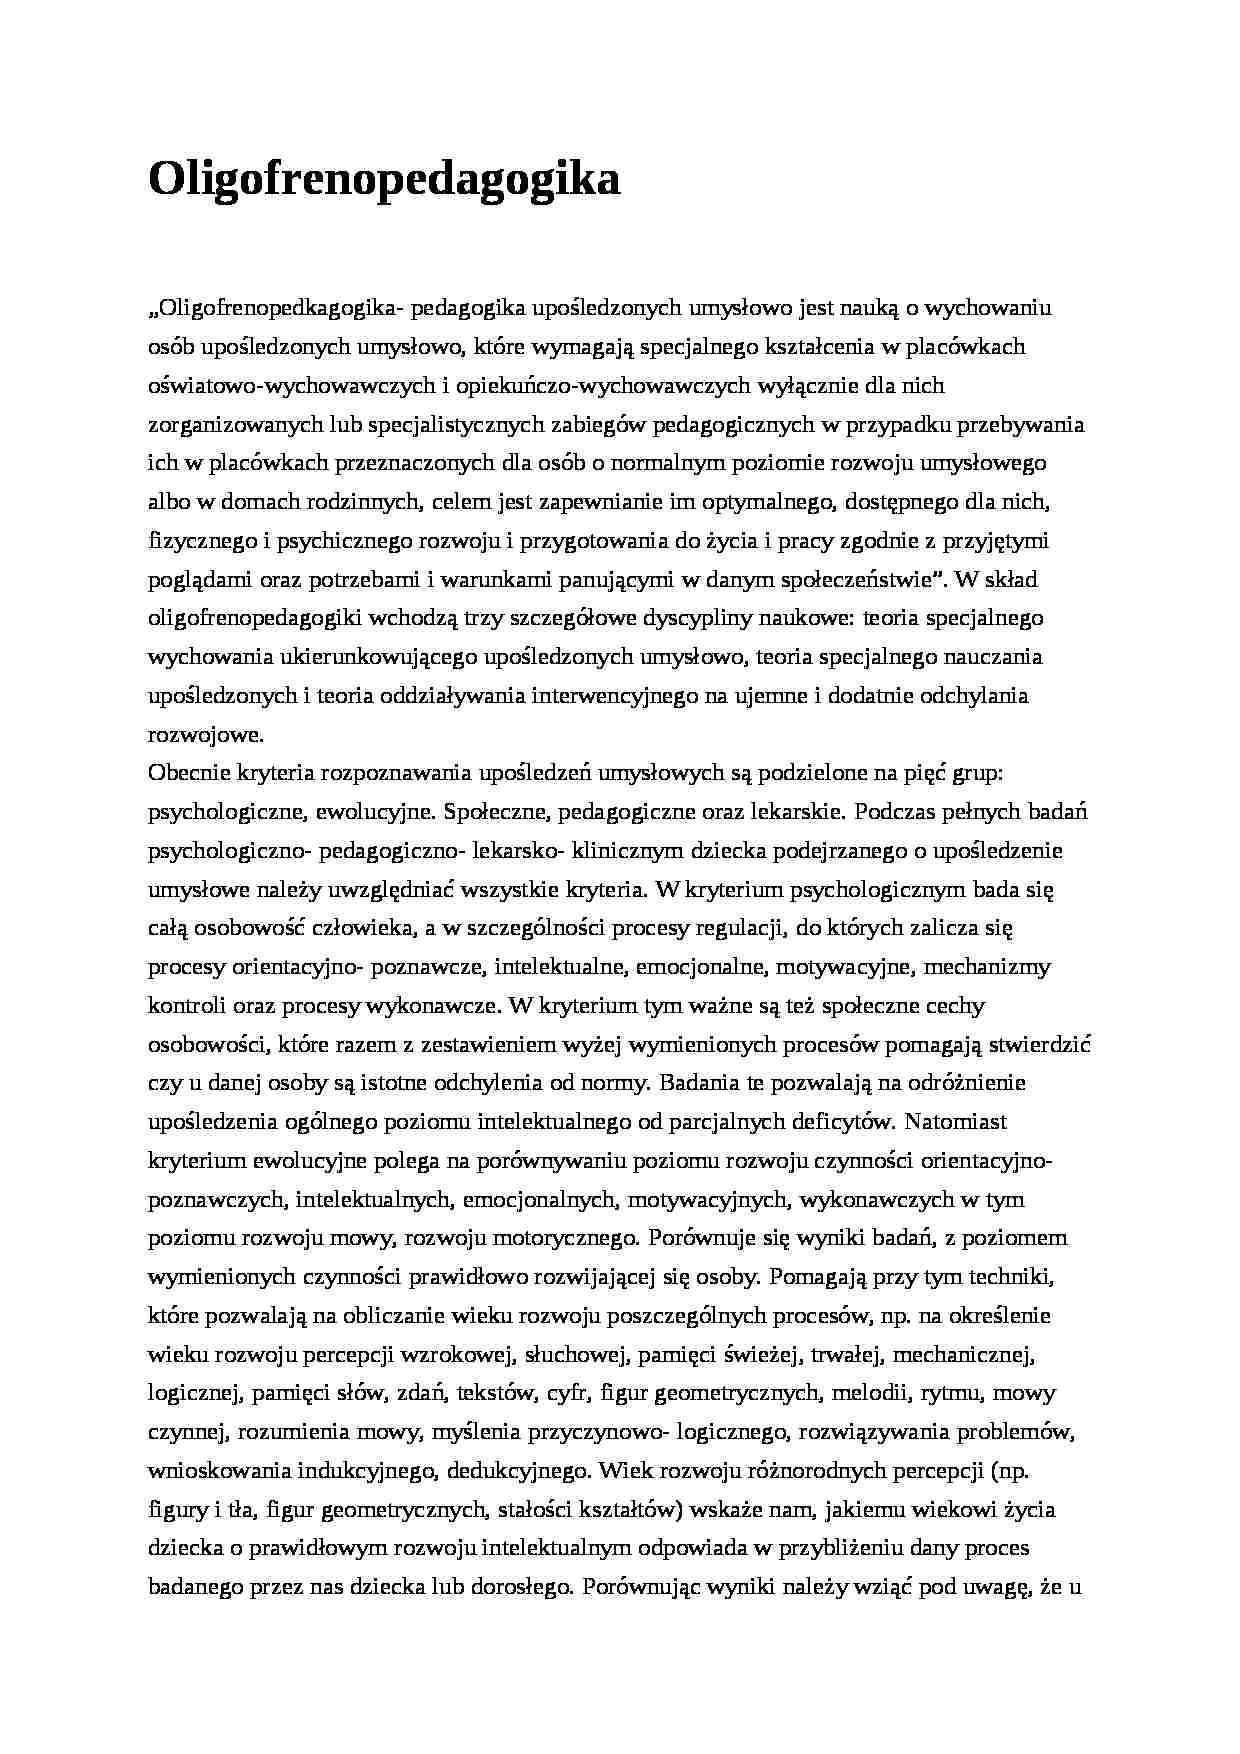 Oligofrenopedagogika- pedagogika - strona 1